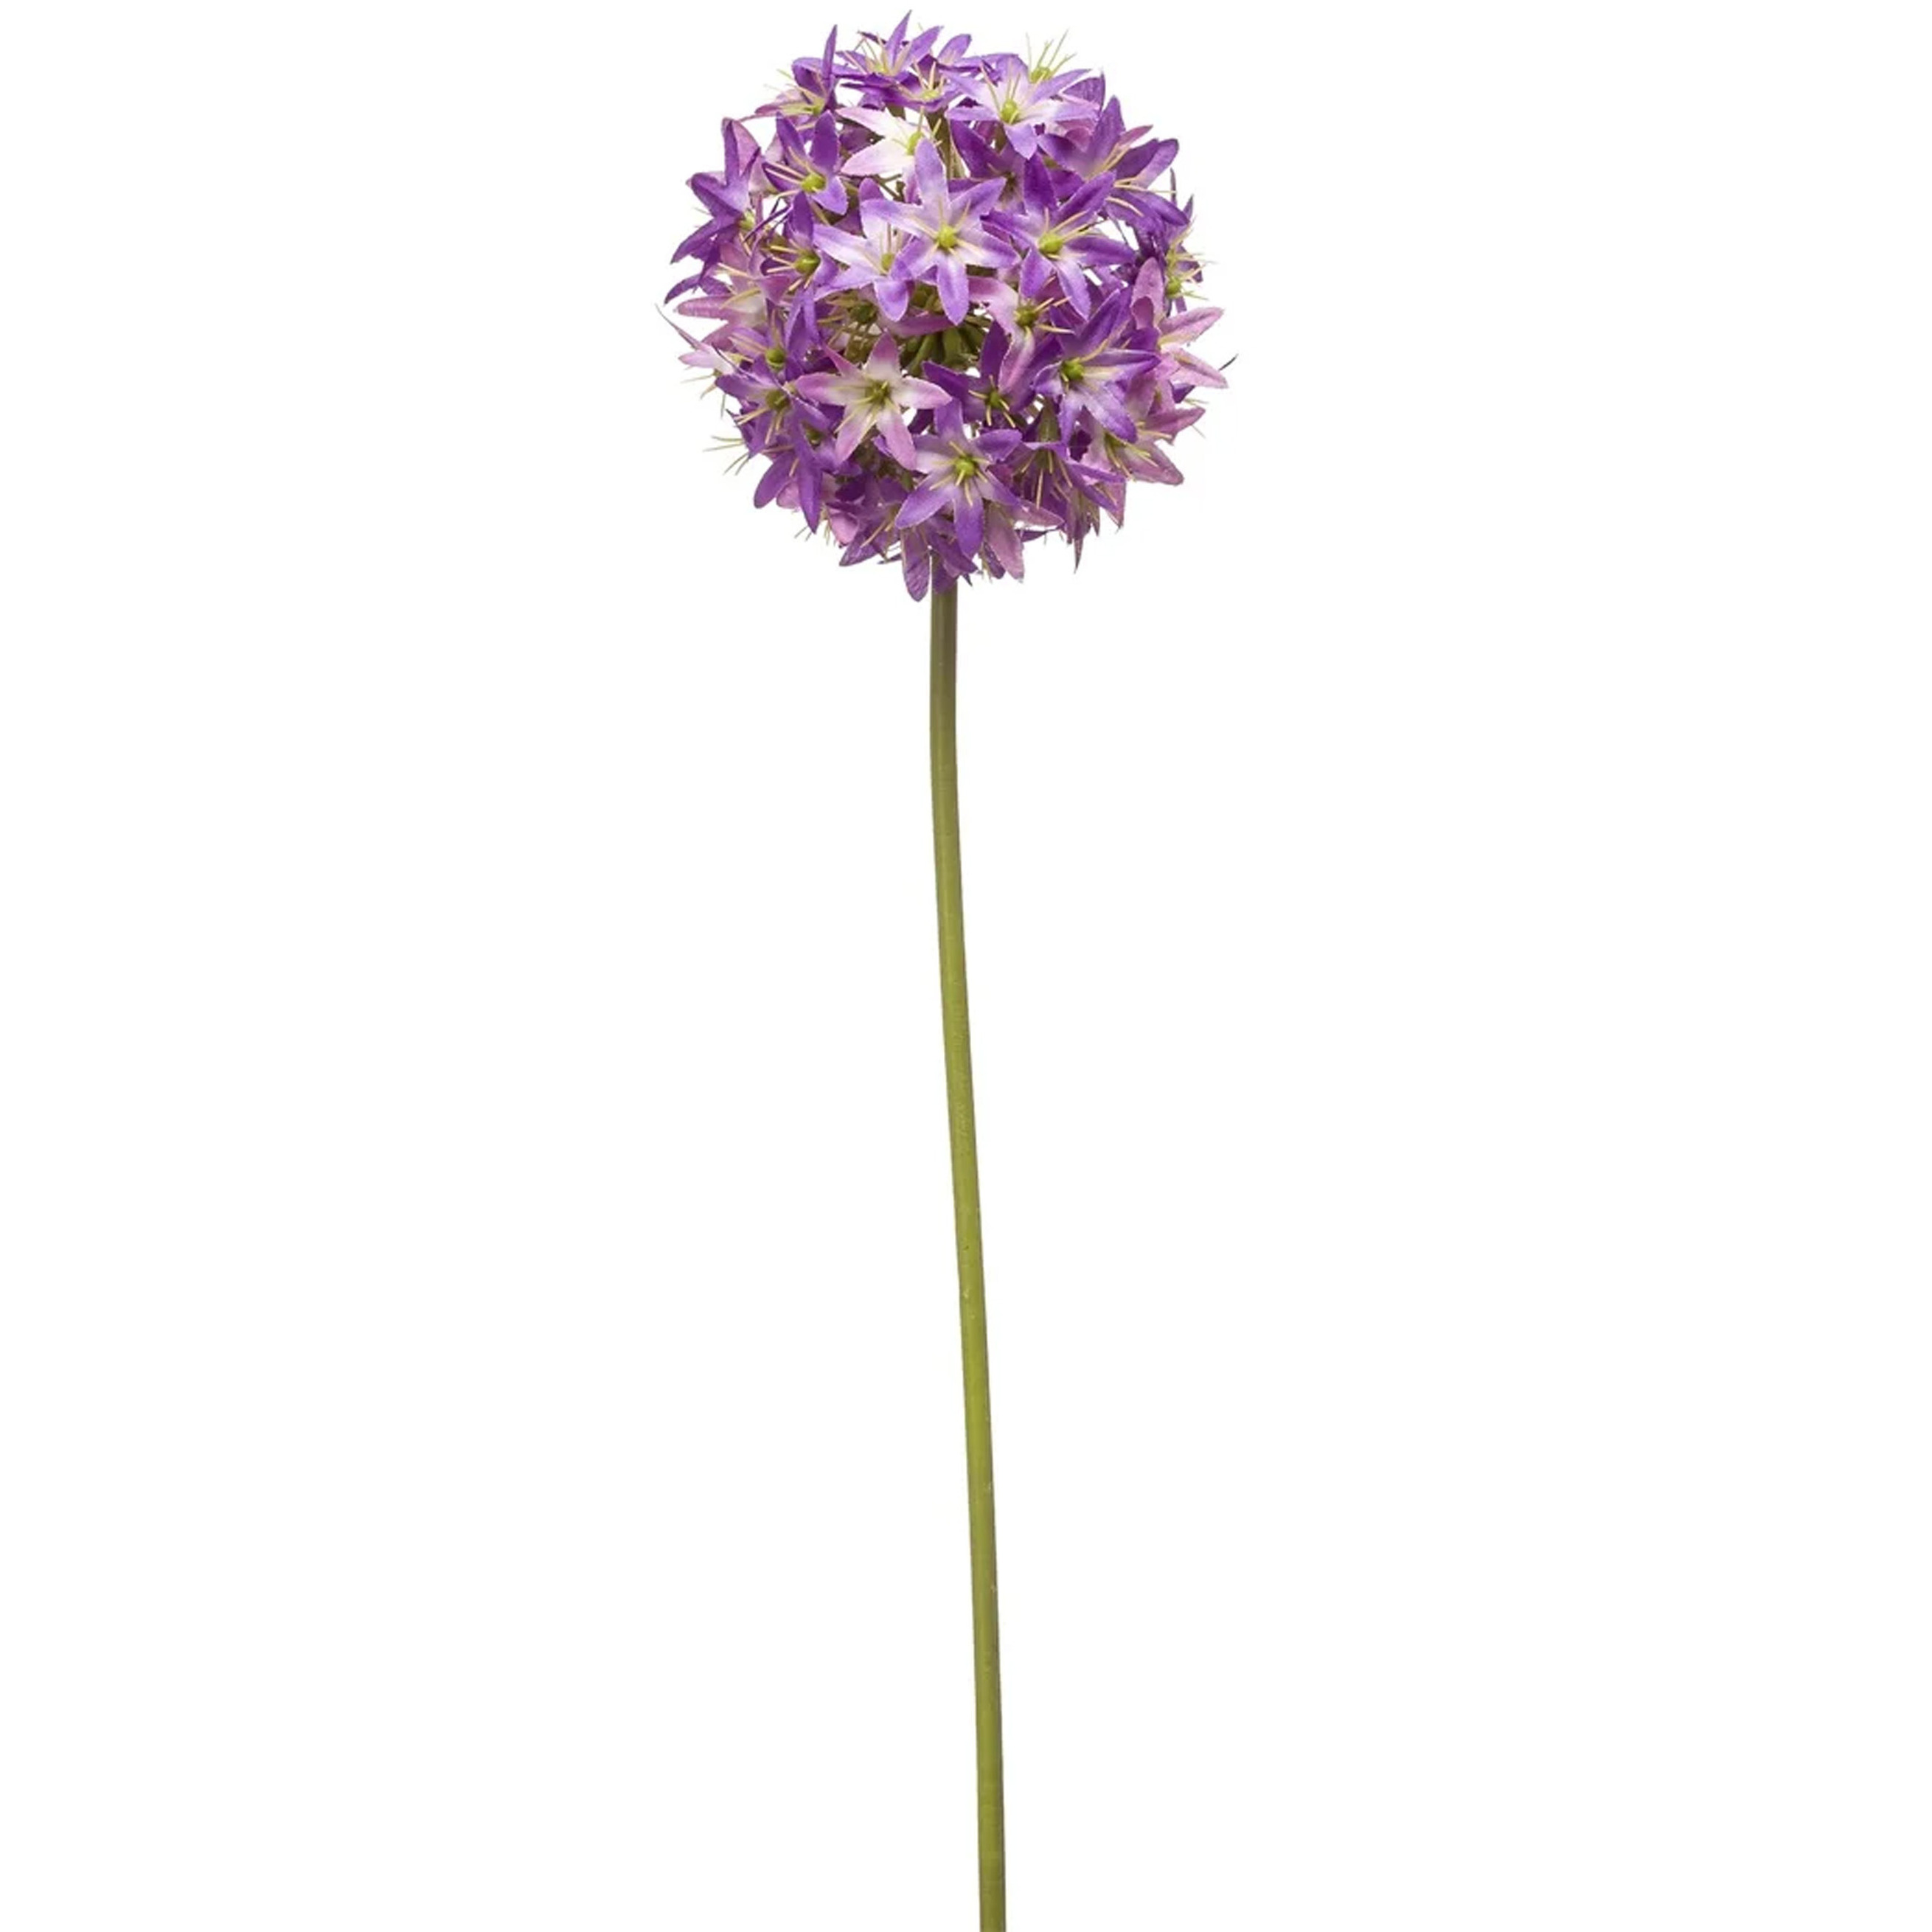 Allium-Sierui kunstbloem losse steel paars 60 cm Natuurlijke uitstraling